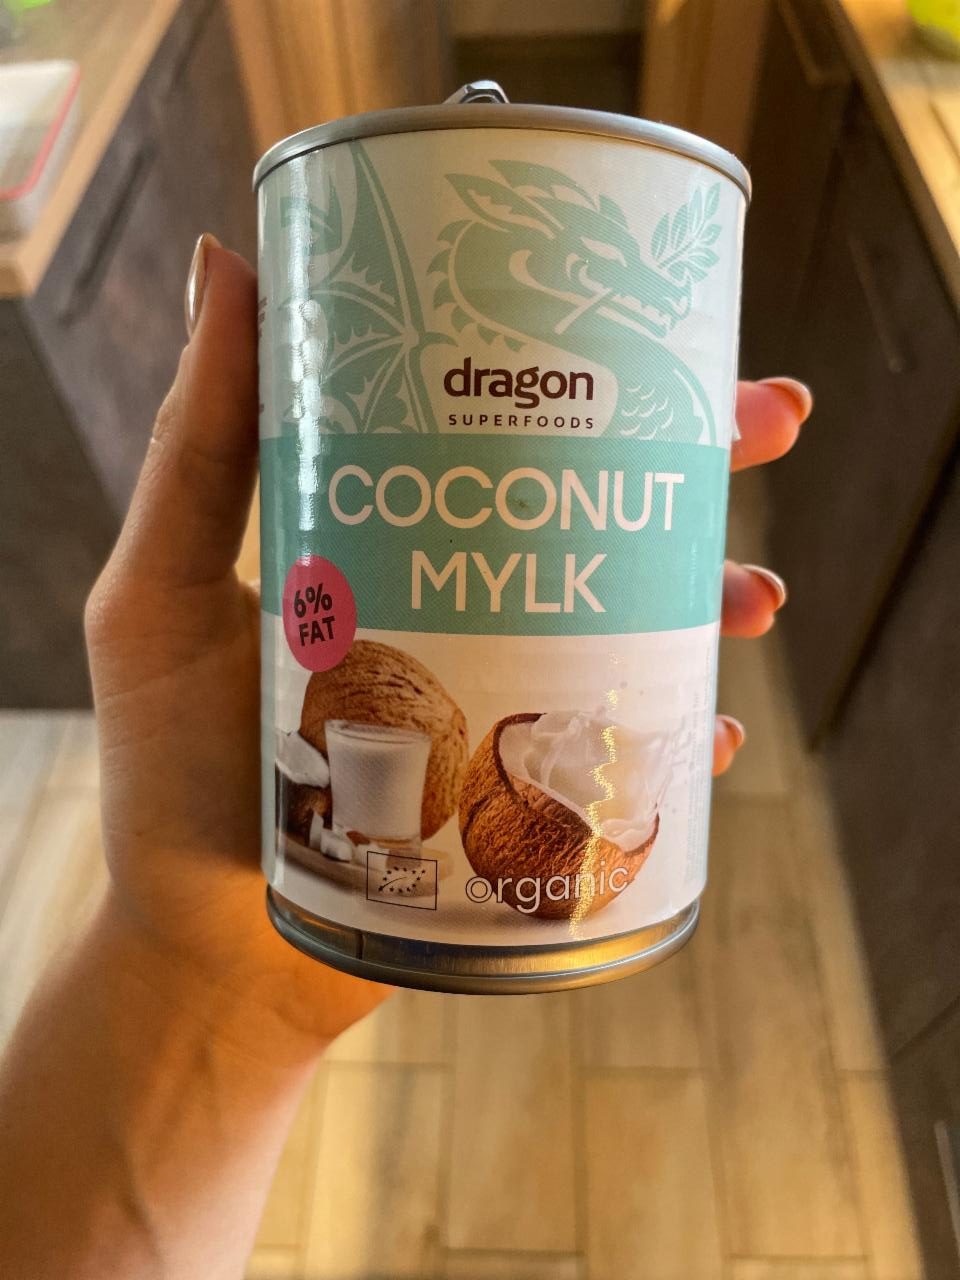 Fotografie - coconut mylk dragon superfoods